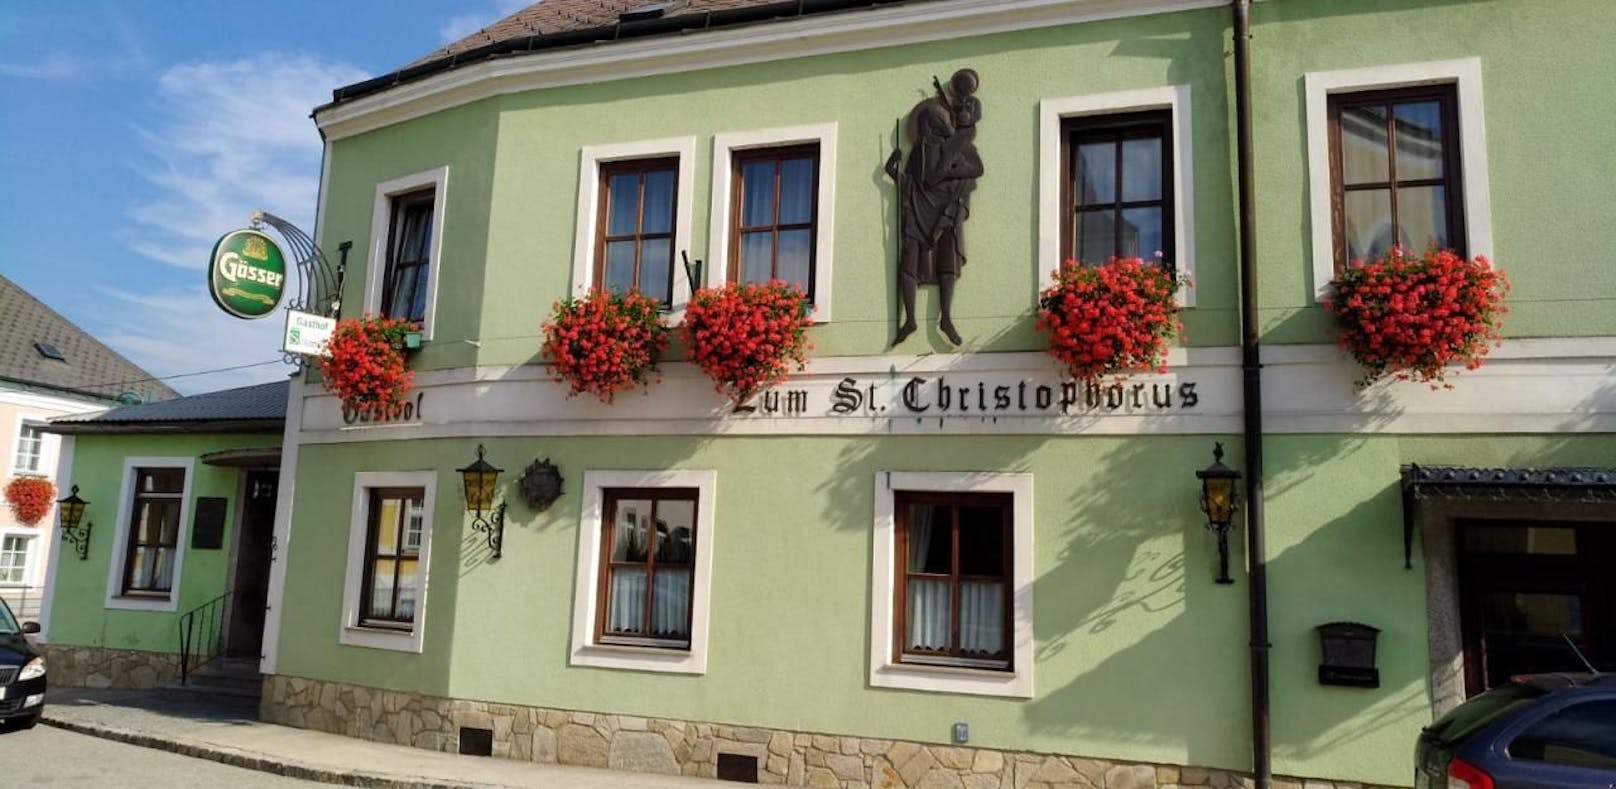 Der Gasthof Schmölz in St. Christophen.